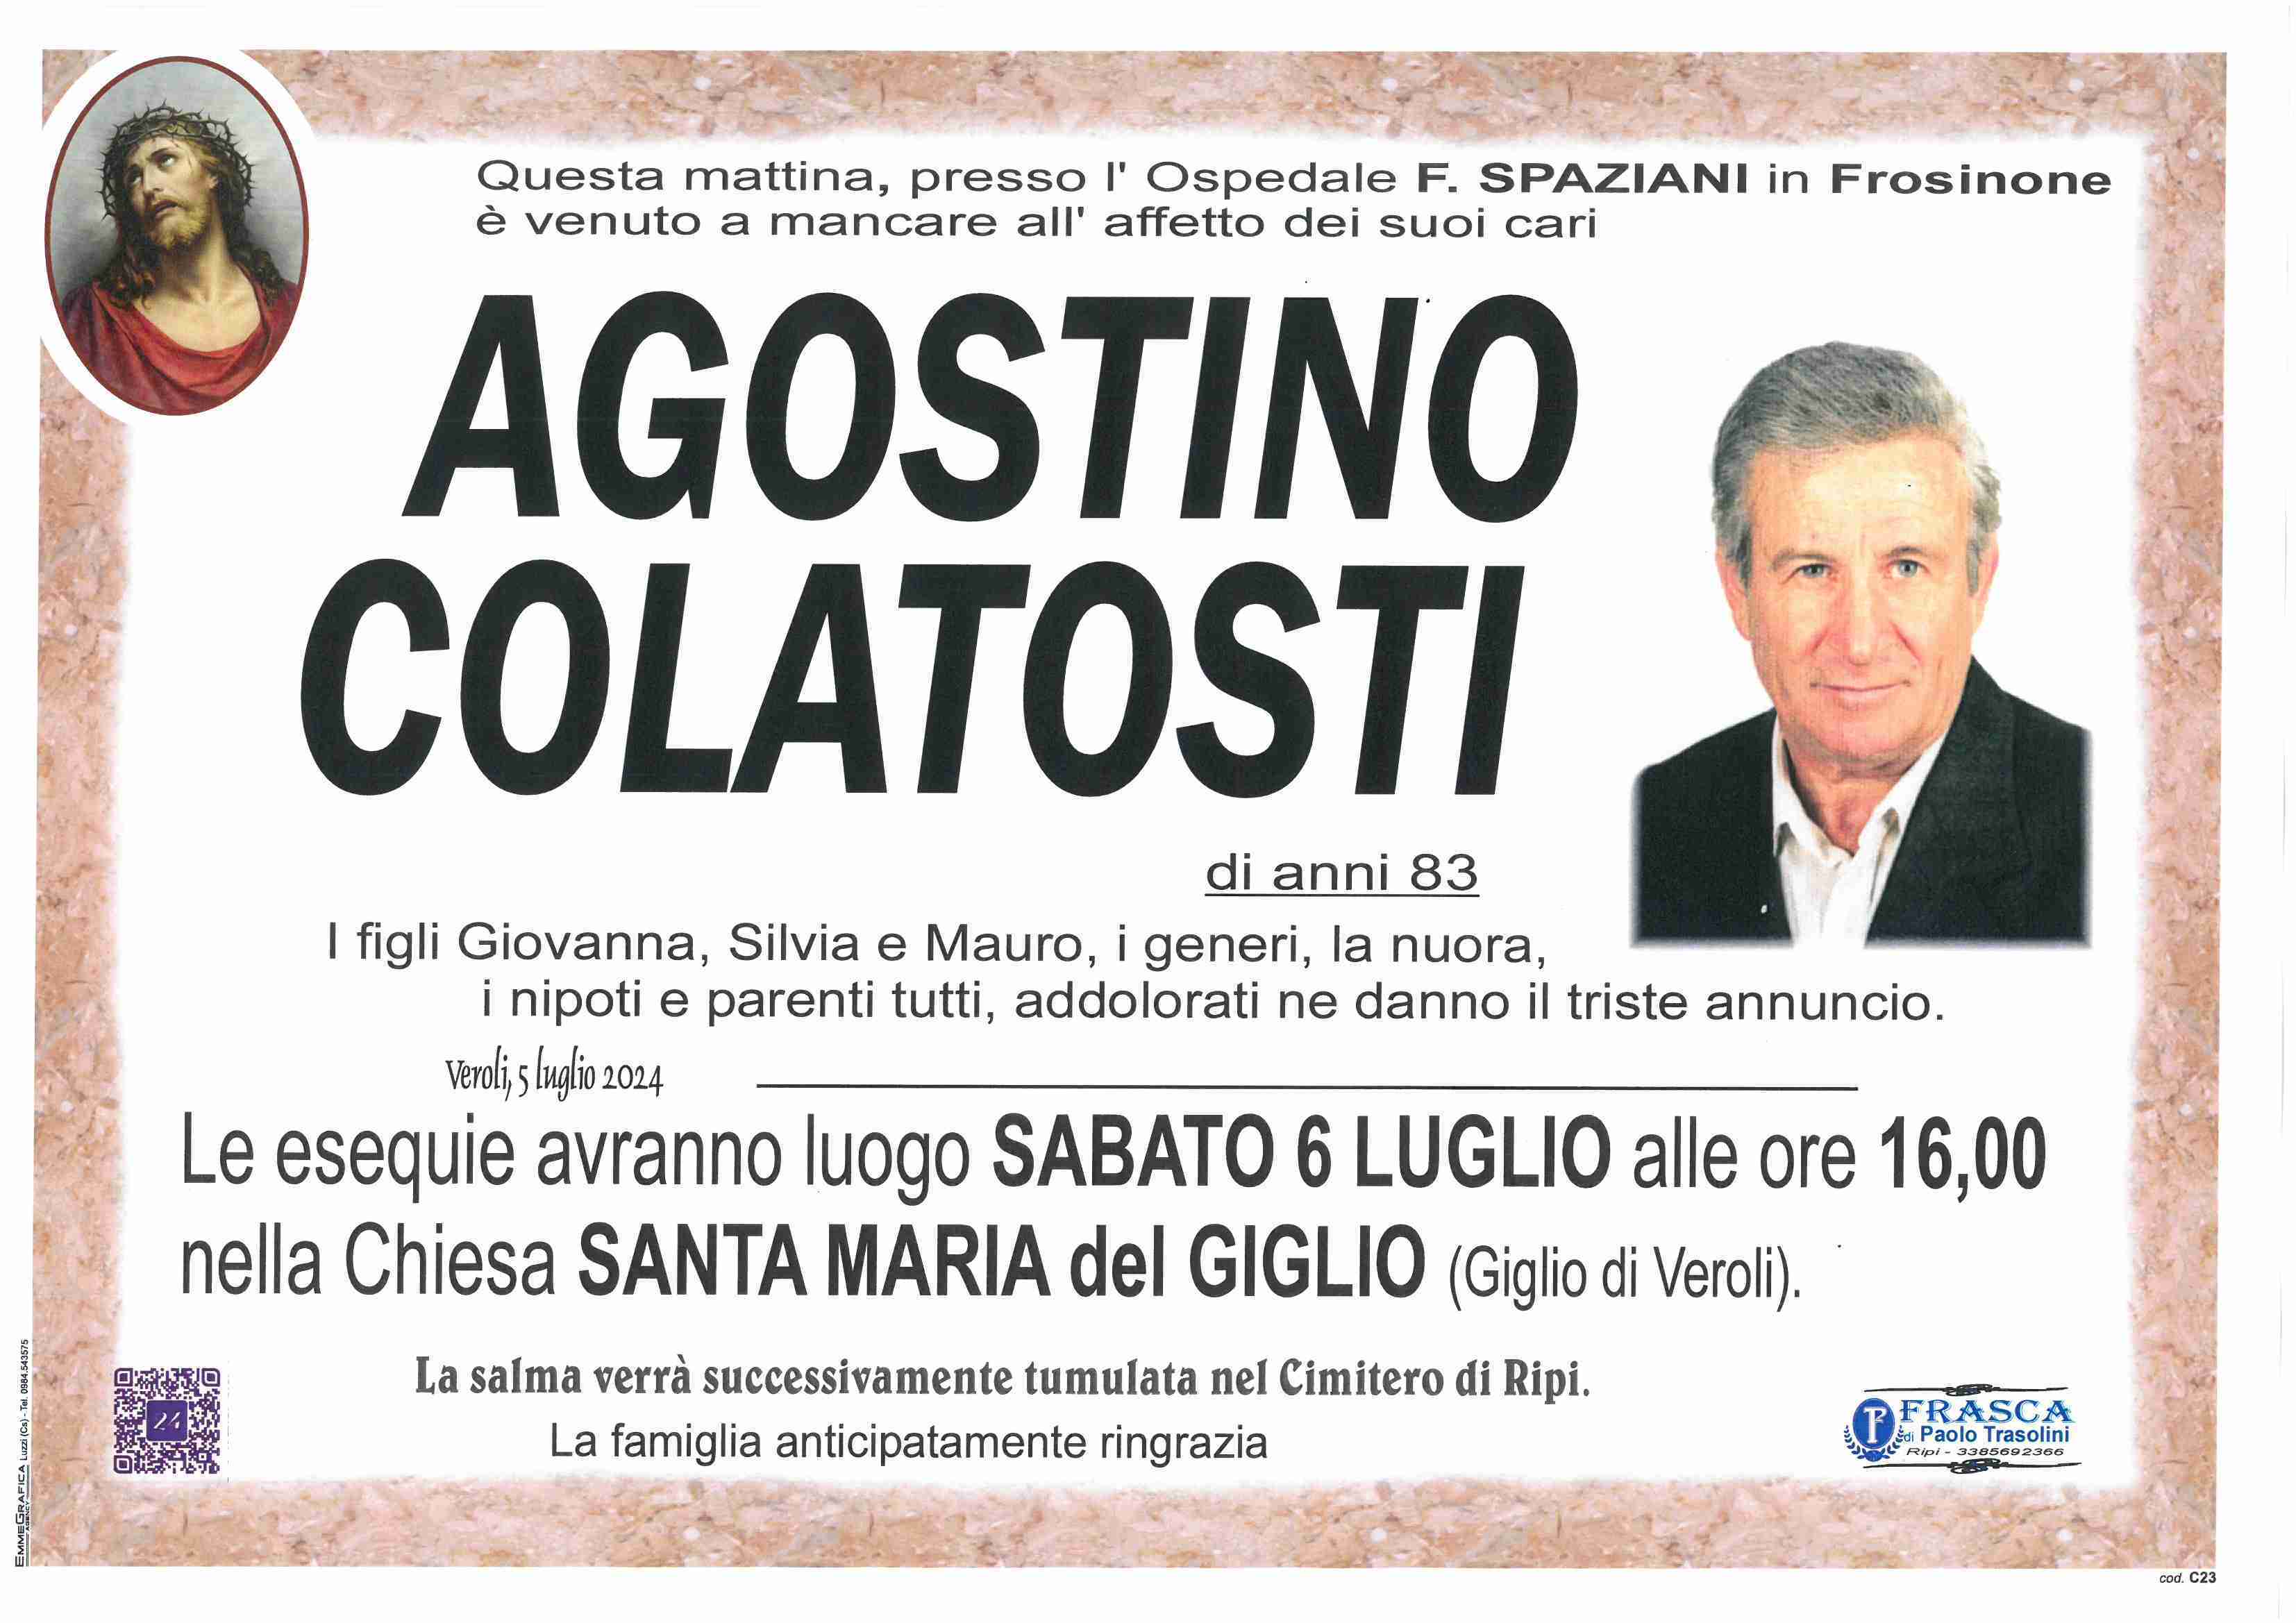 Agostino Colatosti